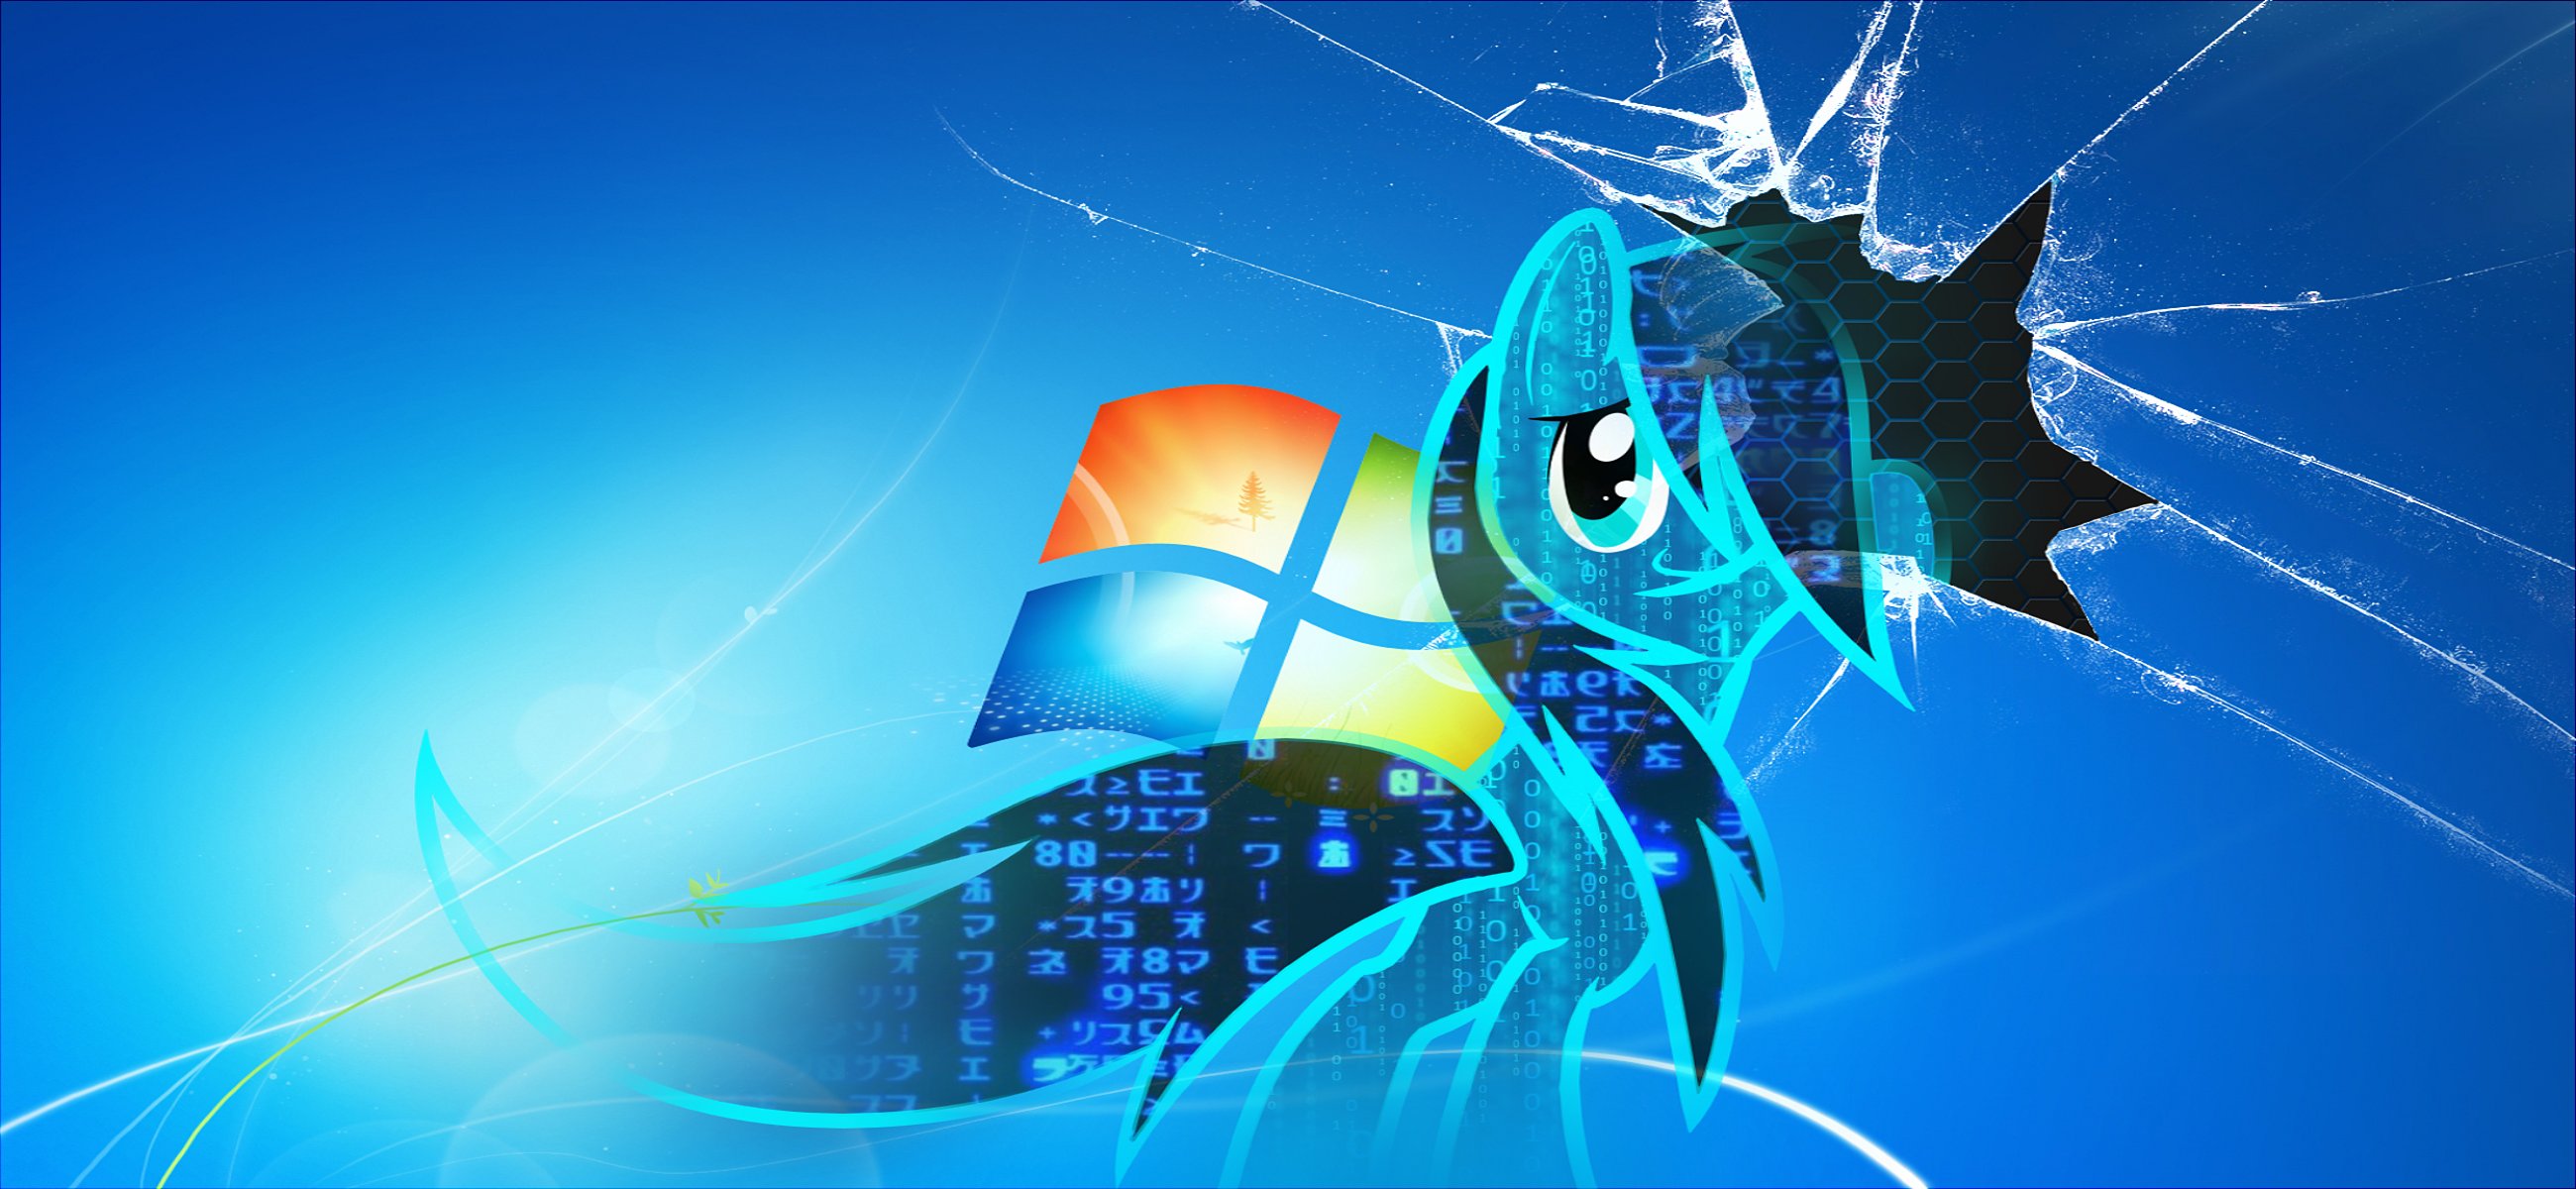 Windows 8 Broken Screen Wallpaper Hd - 2600x1200 Wallpaper 